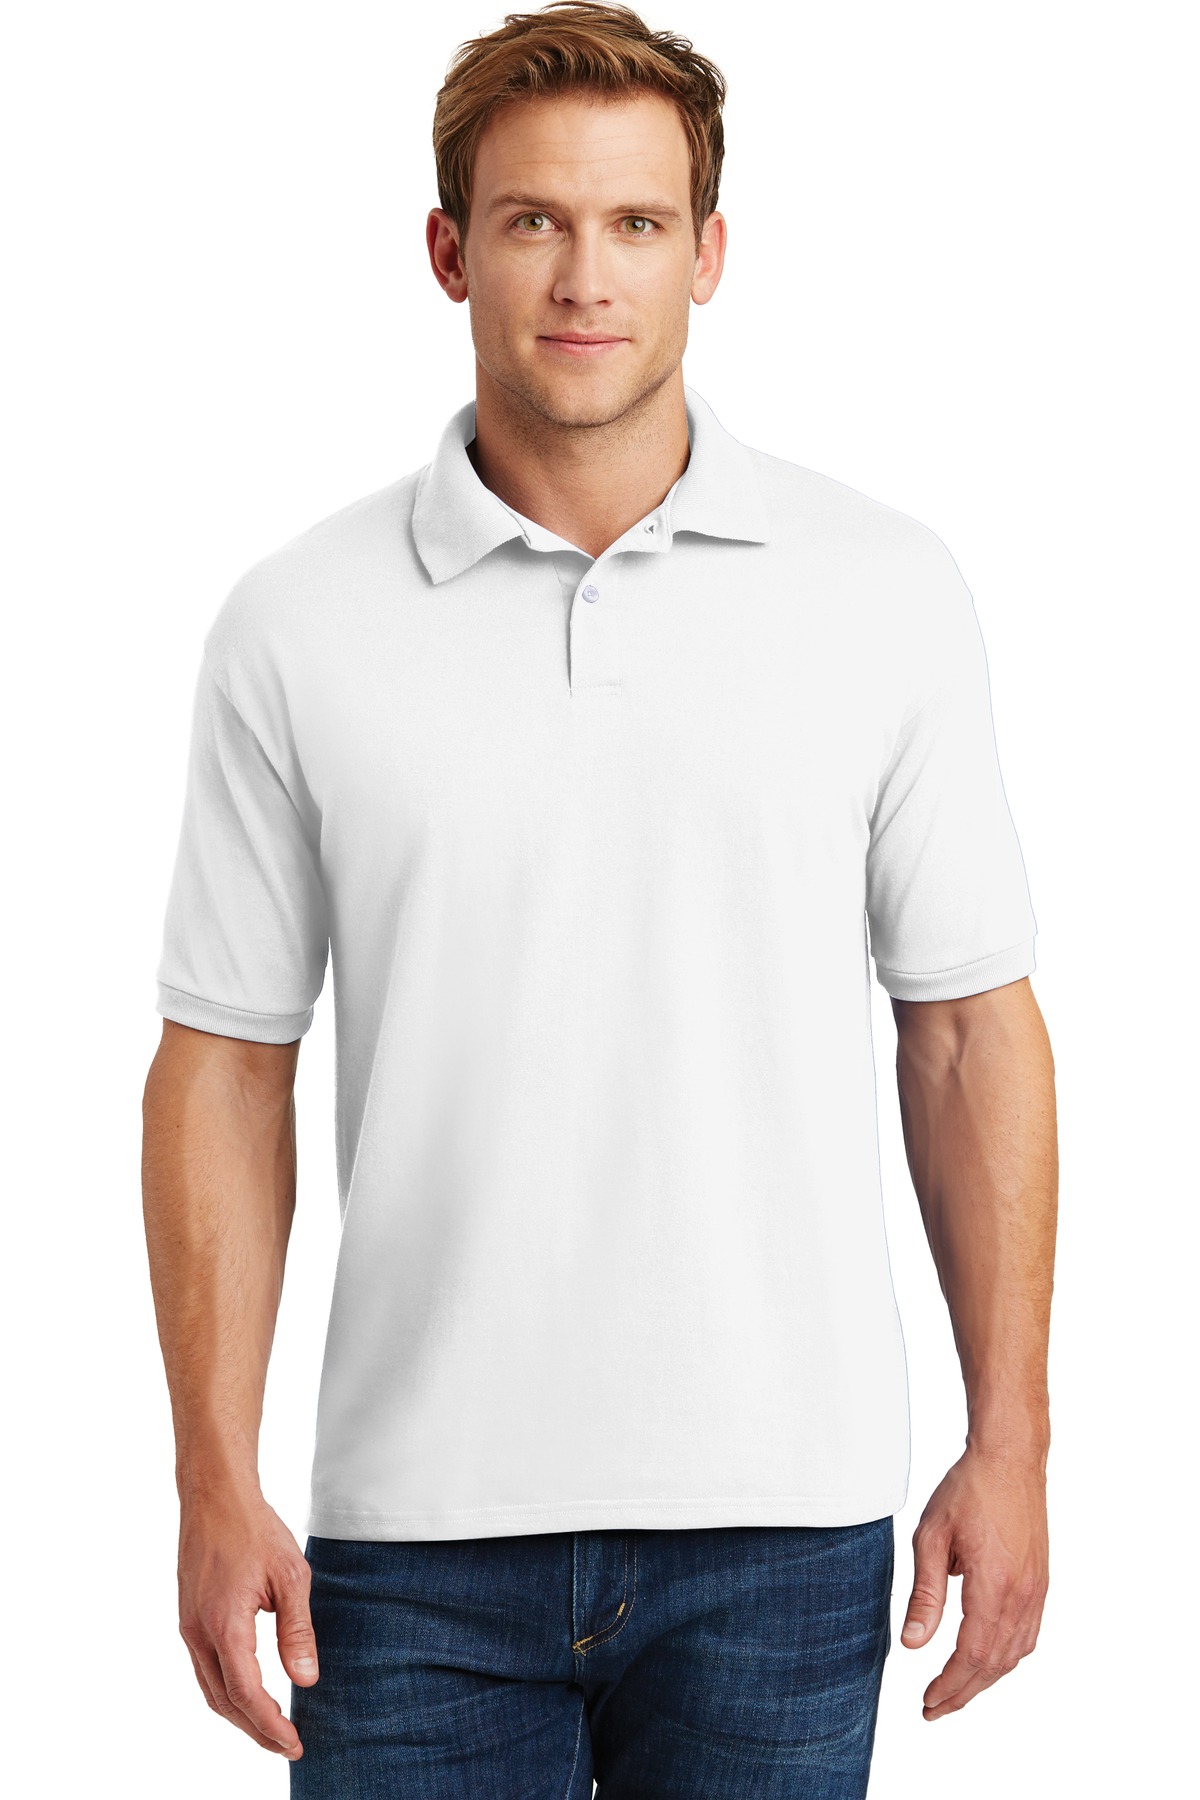 Hanes EcoSmart - 5.2-Ounce Jersey Knit Sport Shirt. 054X